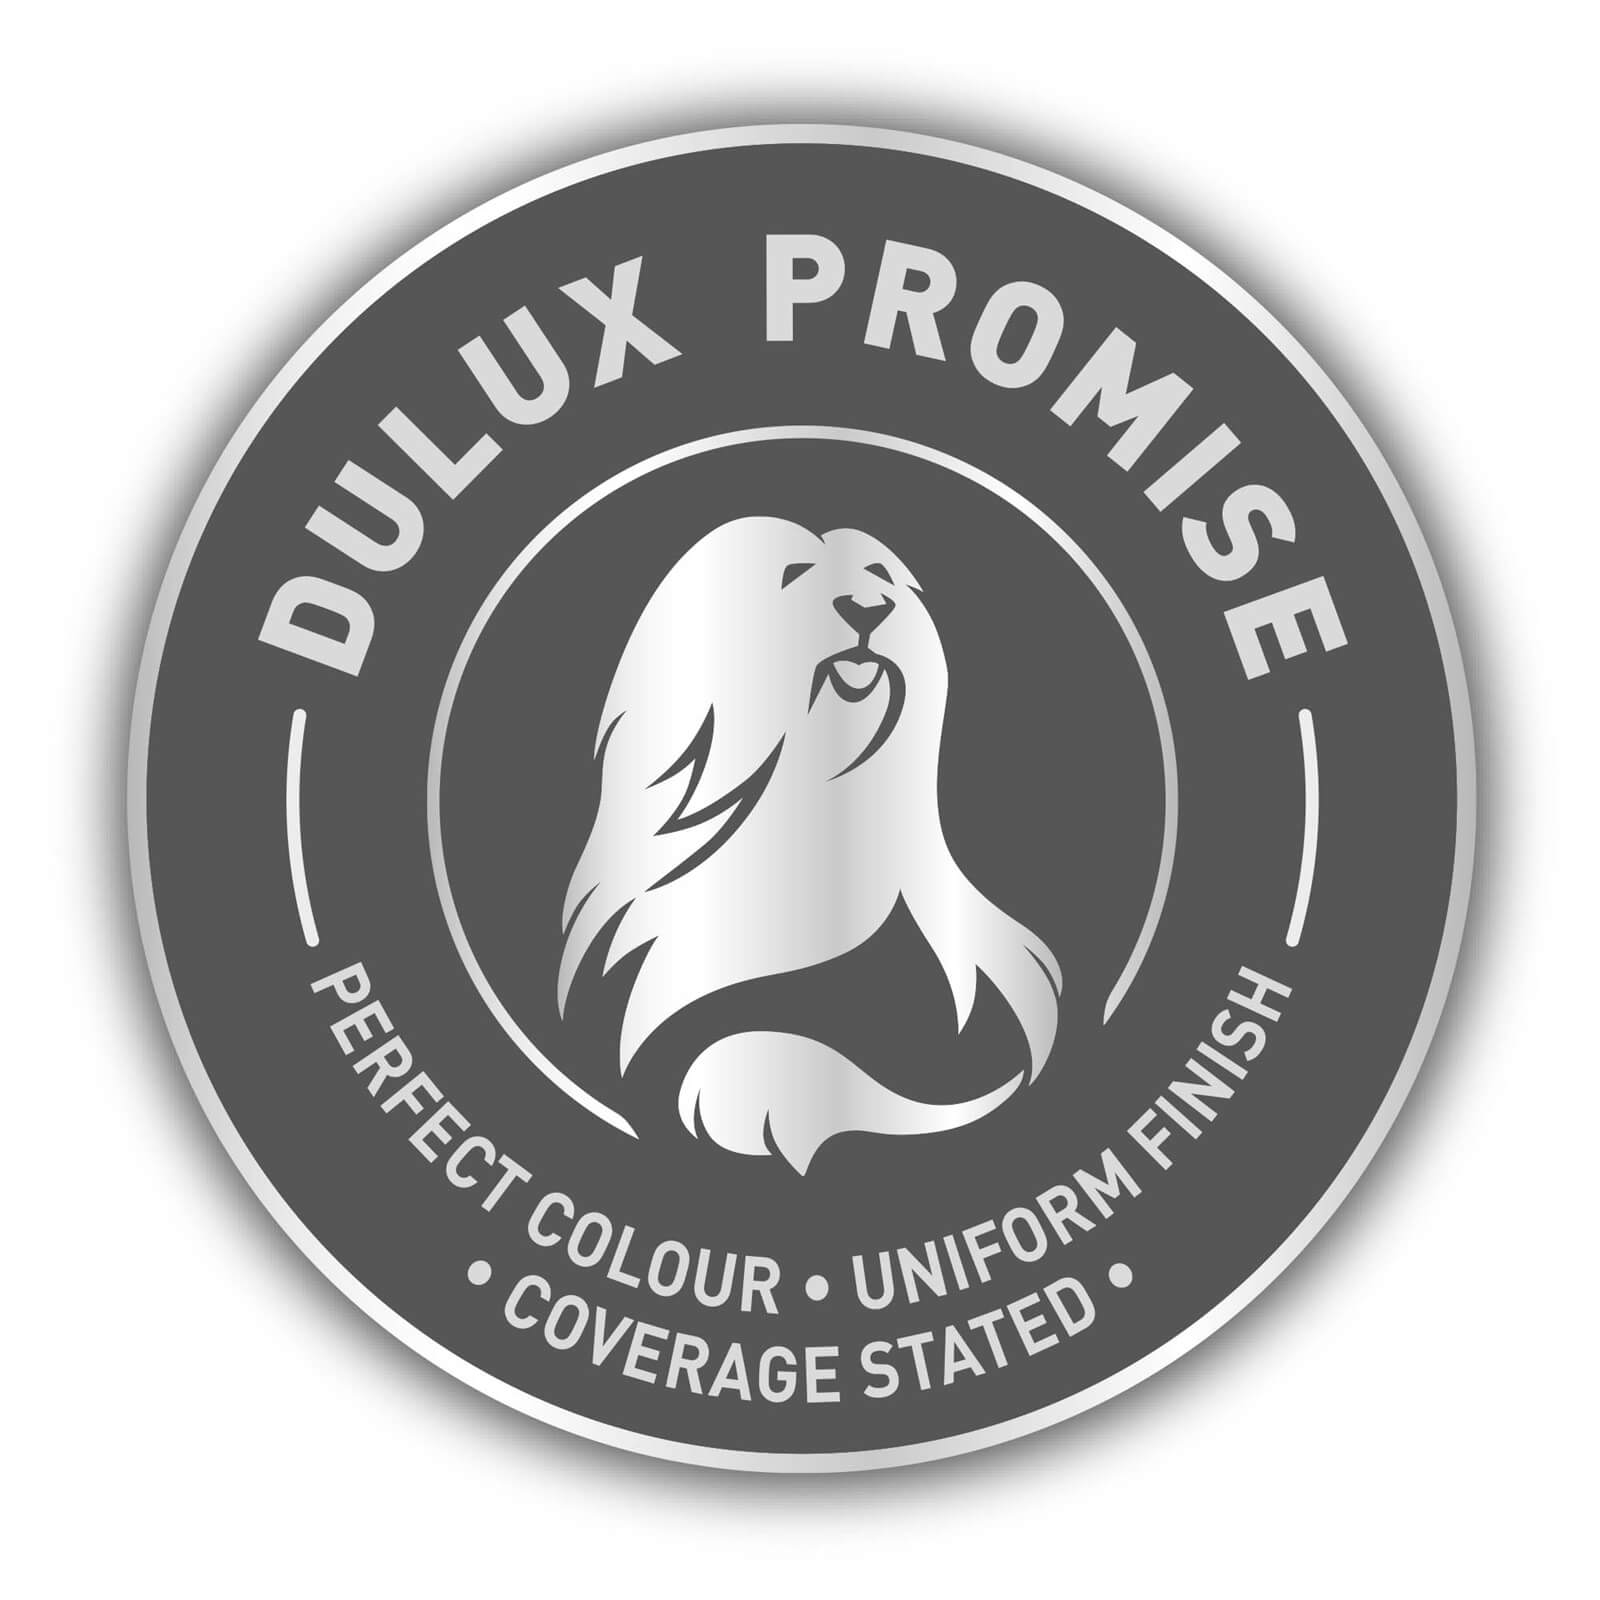 Dulux Easycare Bathroom Ivory Lace Soft Sheen Paint - 2.5L